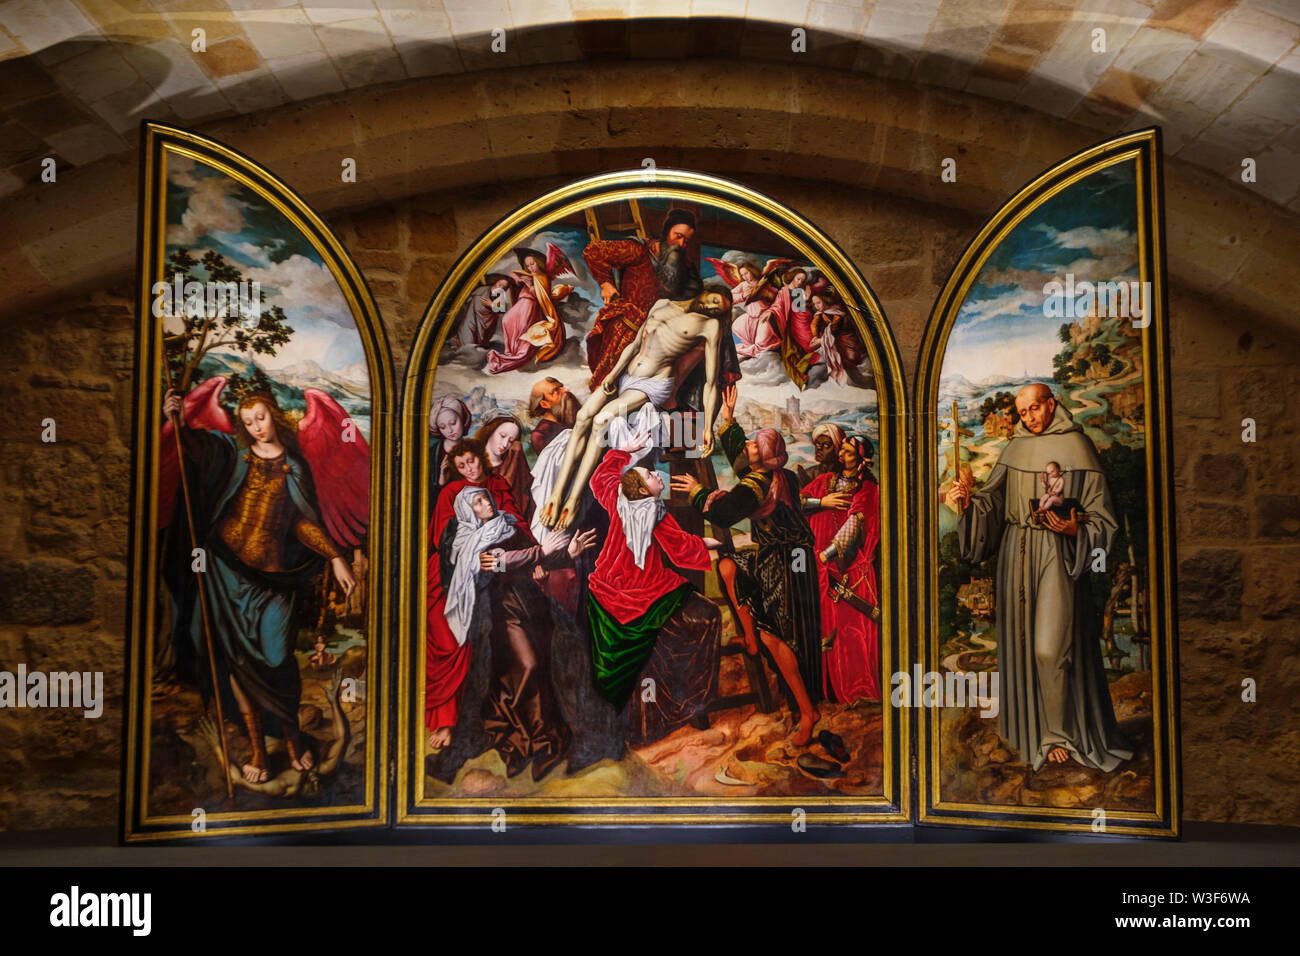 Triptychon von der Abstieg, Ambrosius Benson 1532-36. Malerei Zimmer unter Kreuzgang. Spätgotischen Architektur Stil, die Kathedrale Santa Iglesia Catedral de N Stockfoto